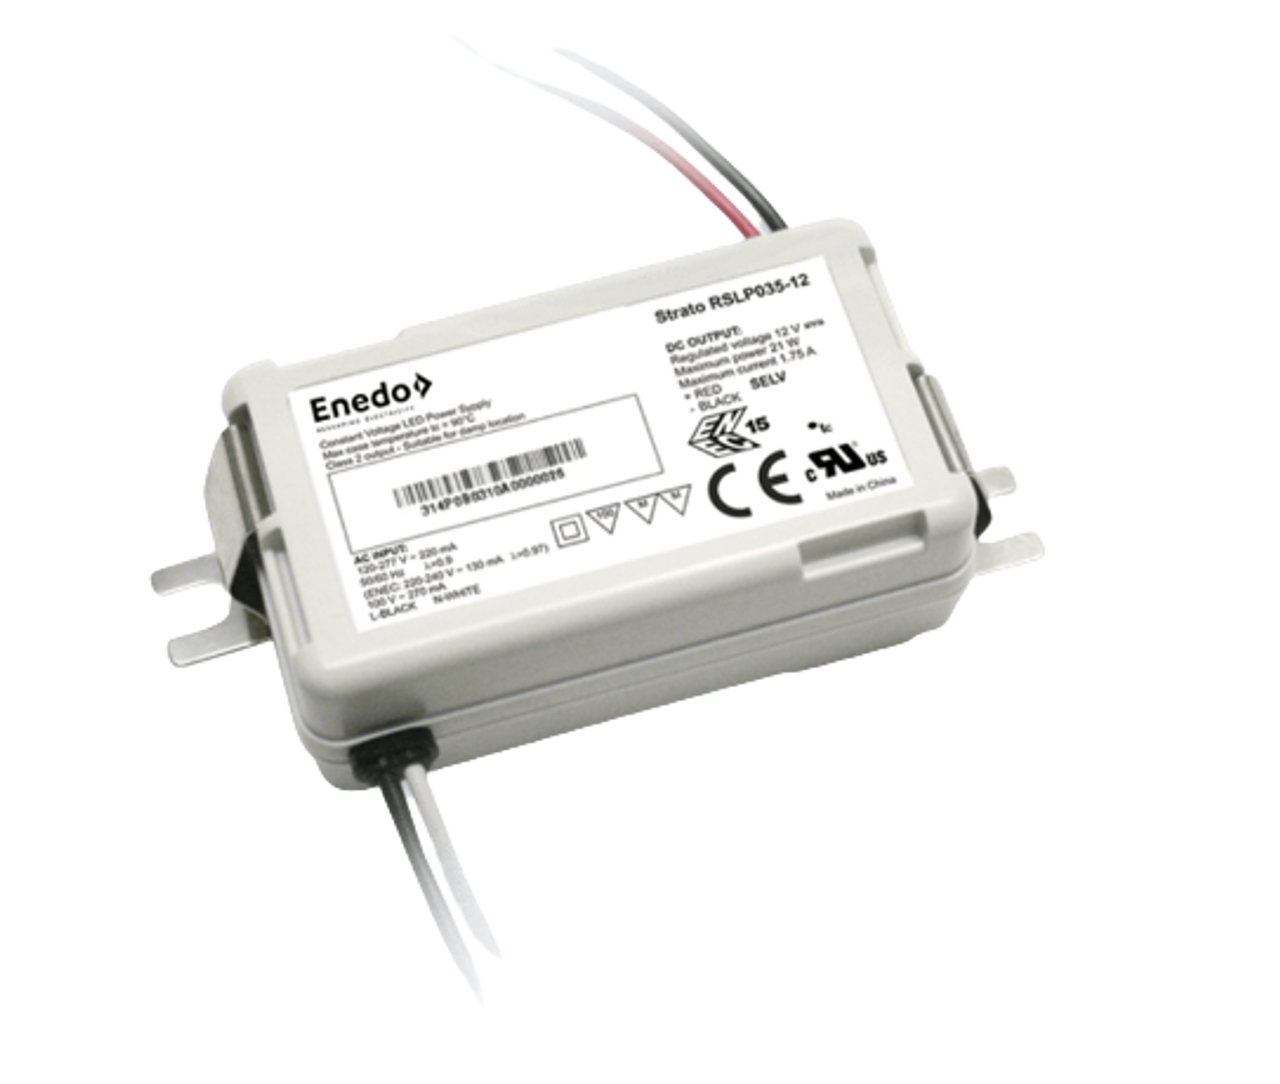 stemning evigt Kortfattet RSLP035-48 Enedo (ROAL) Strato Constant Voltage LED Driver | 35-W Series 48V